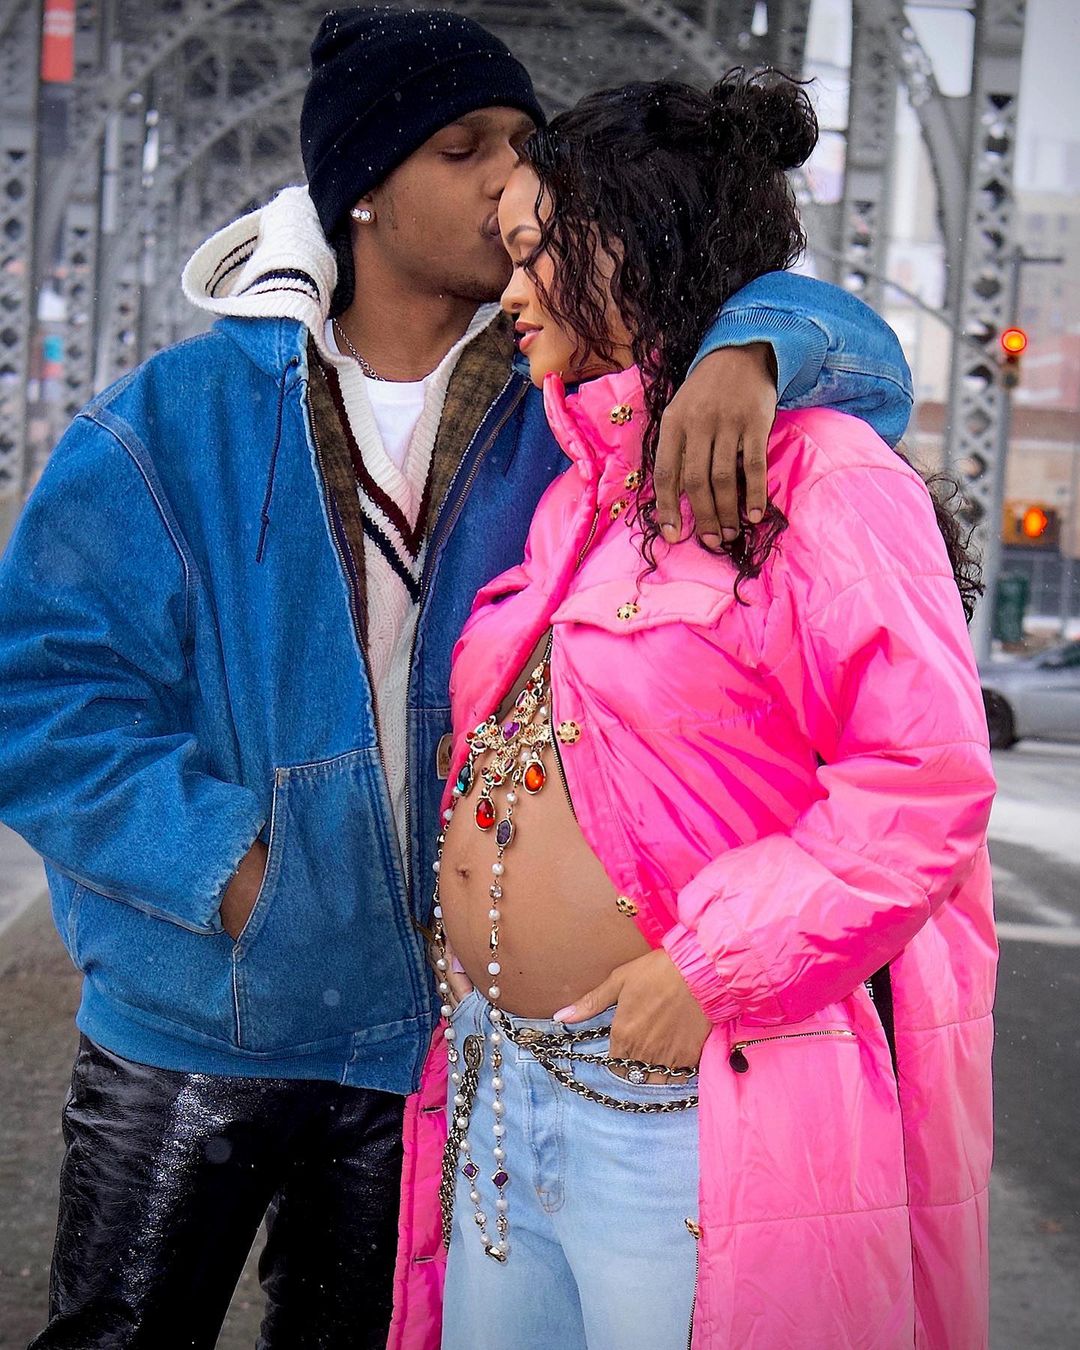 Se confirma, ¡Rihanna está embarazada! Espera a su primer hijo junto al rapero A$AP Rocky